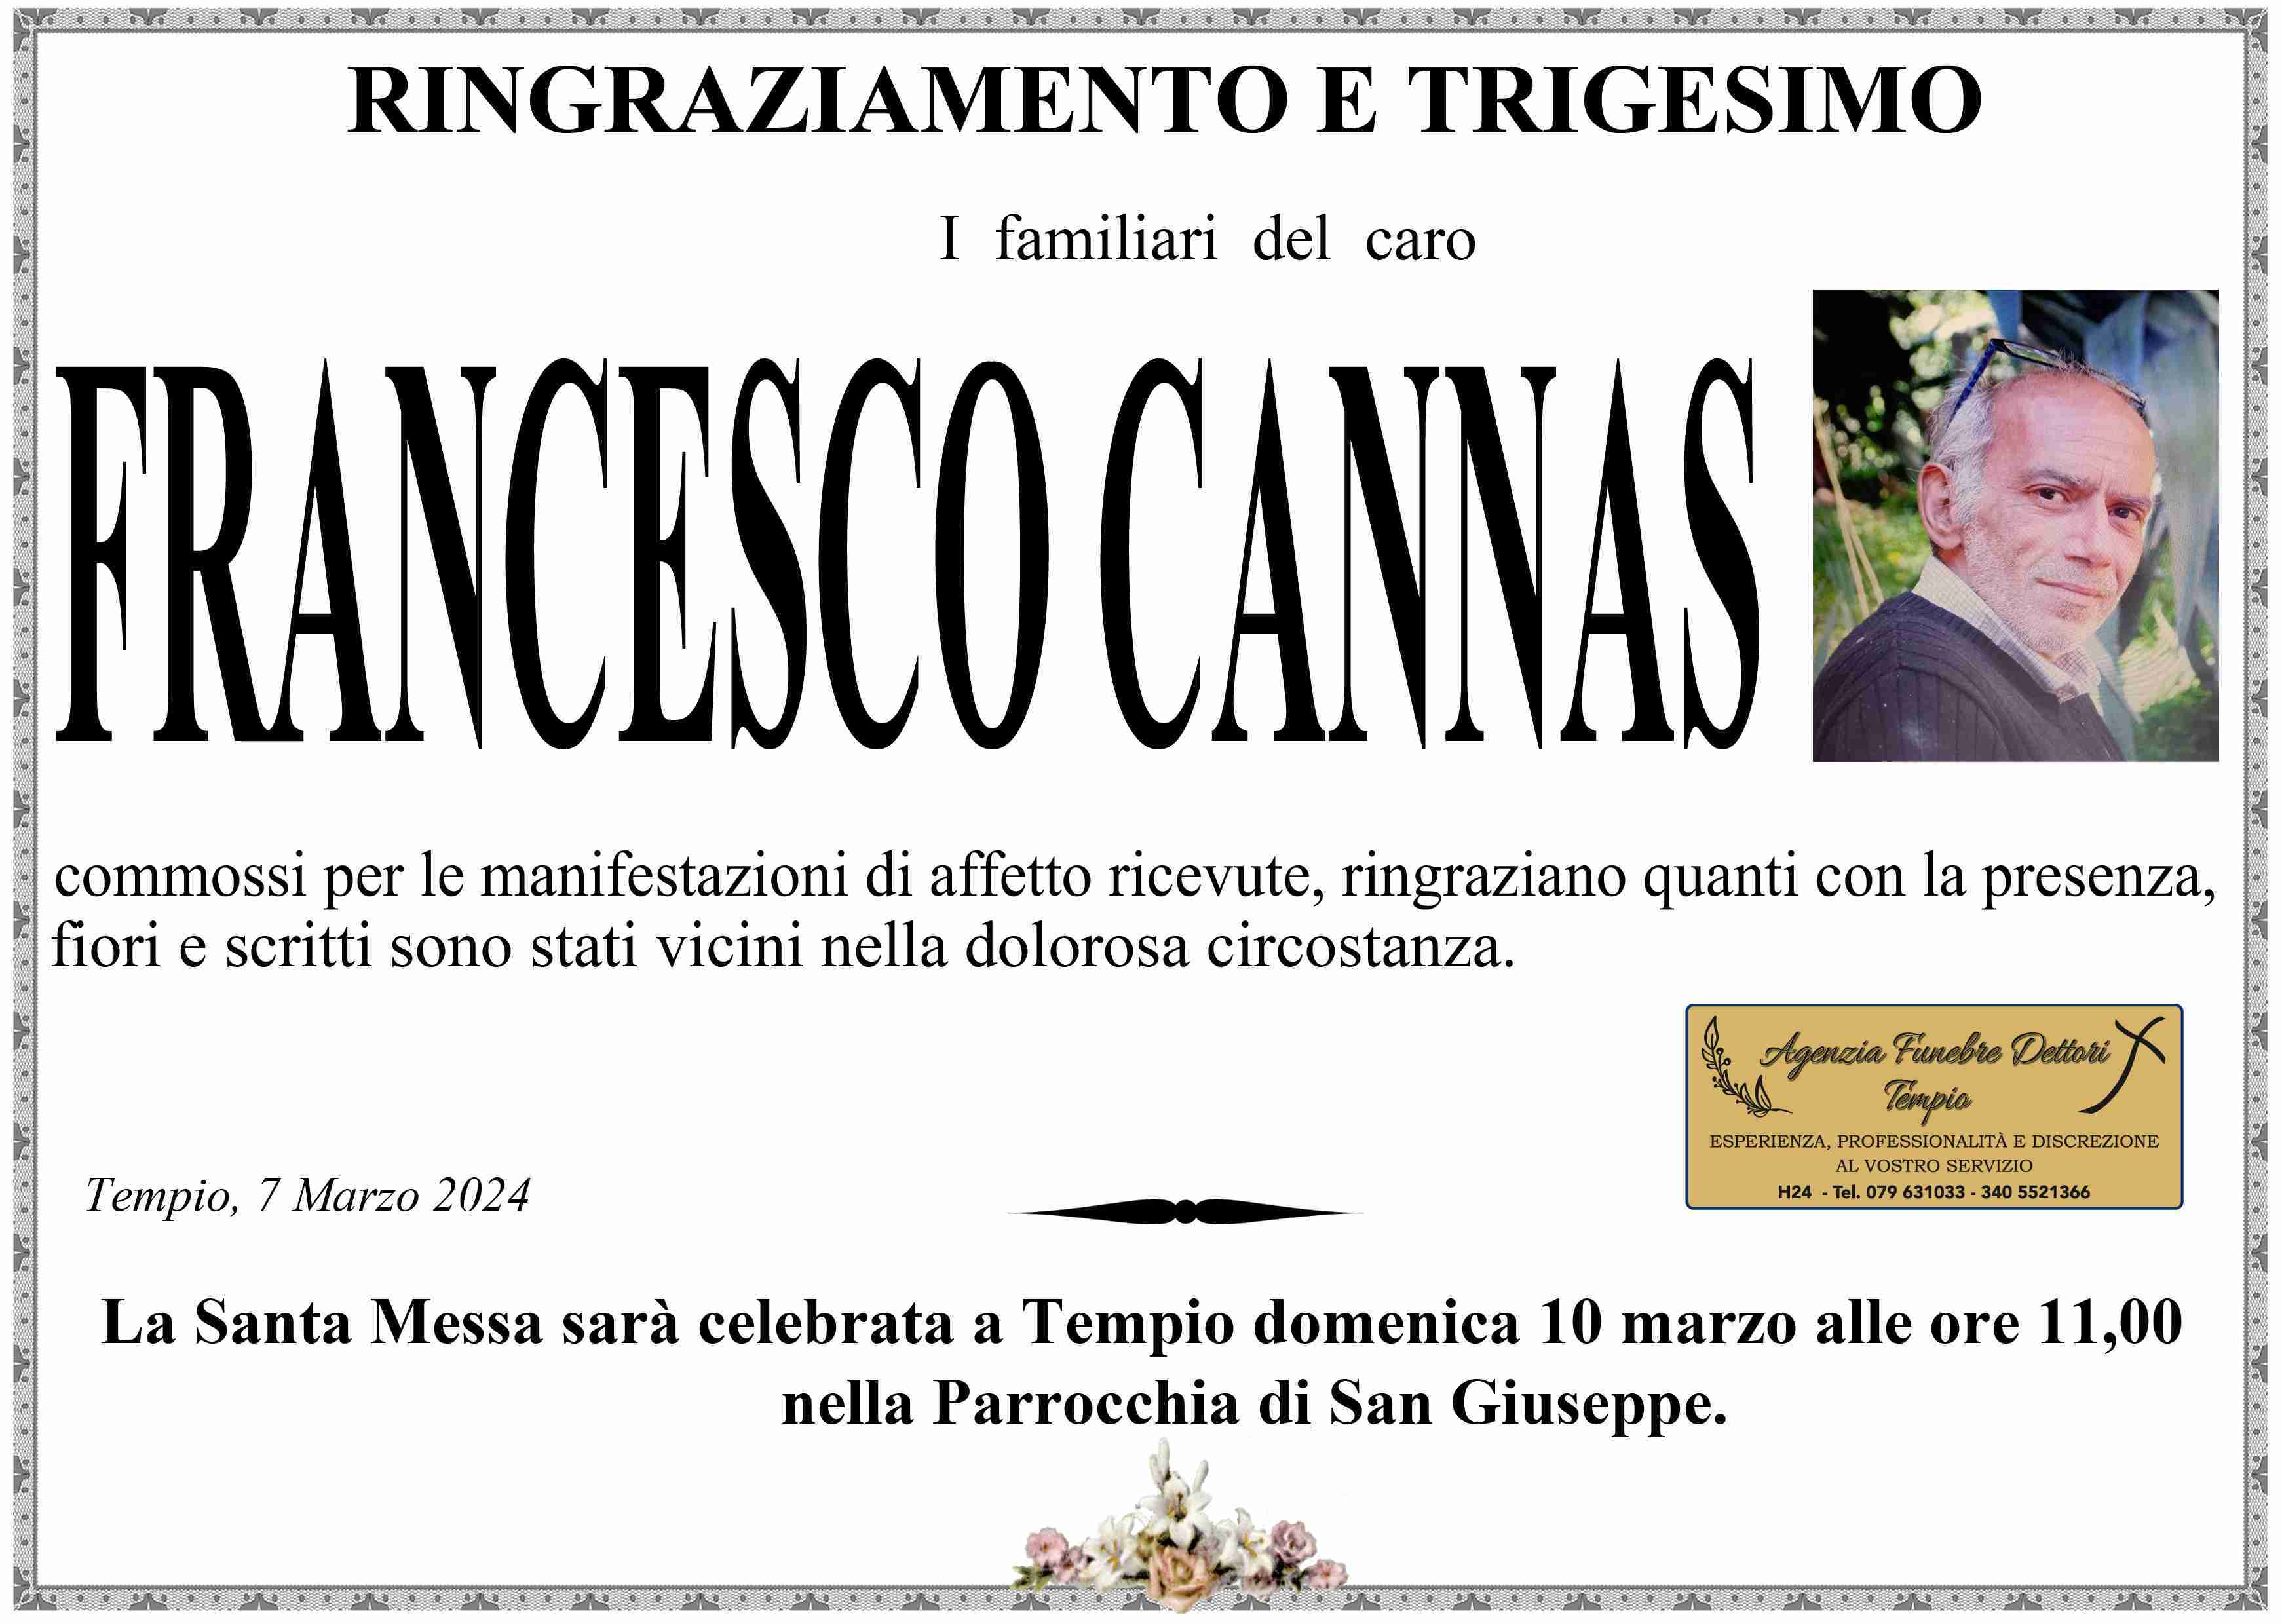 Francesco Cannas